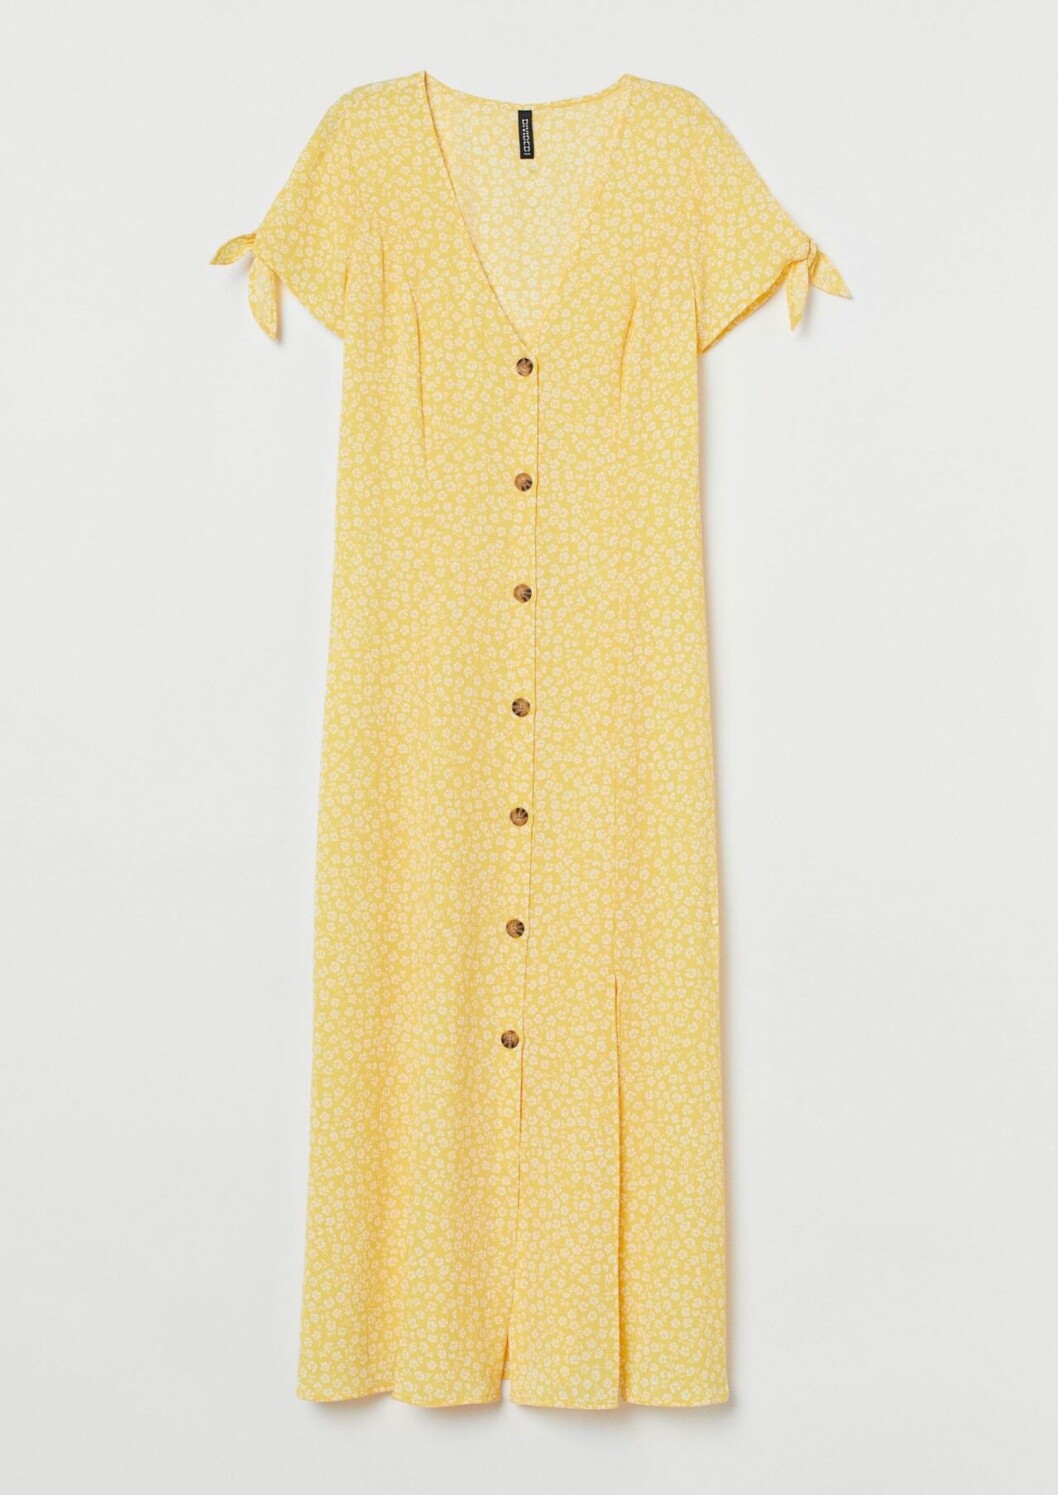 Mönstrad gul klänning med knappar från H&M till sommaren 2020